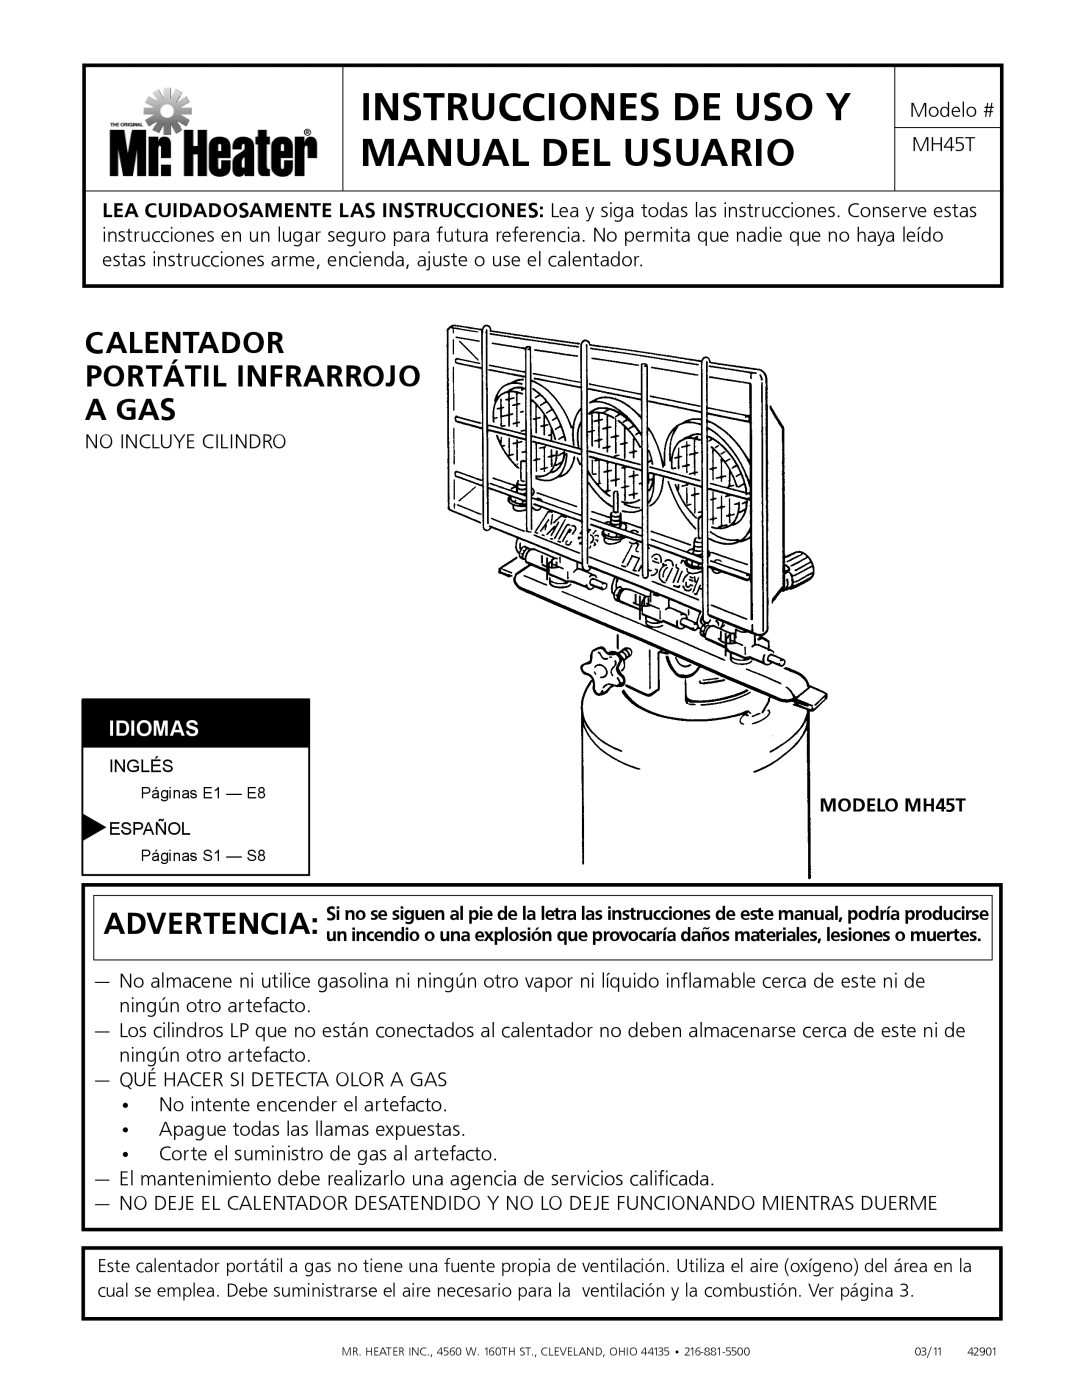 Mr. Heater MH45T owner manual Instrucciones De Uso Y Manual Del Usuario, Calentador Portátil Infrarrojo A Gas, Idiomas 